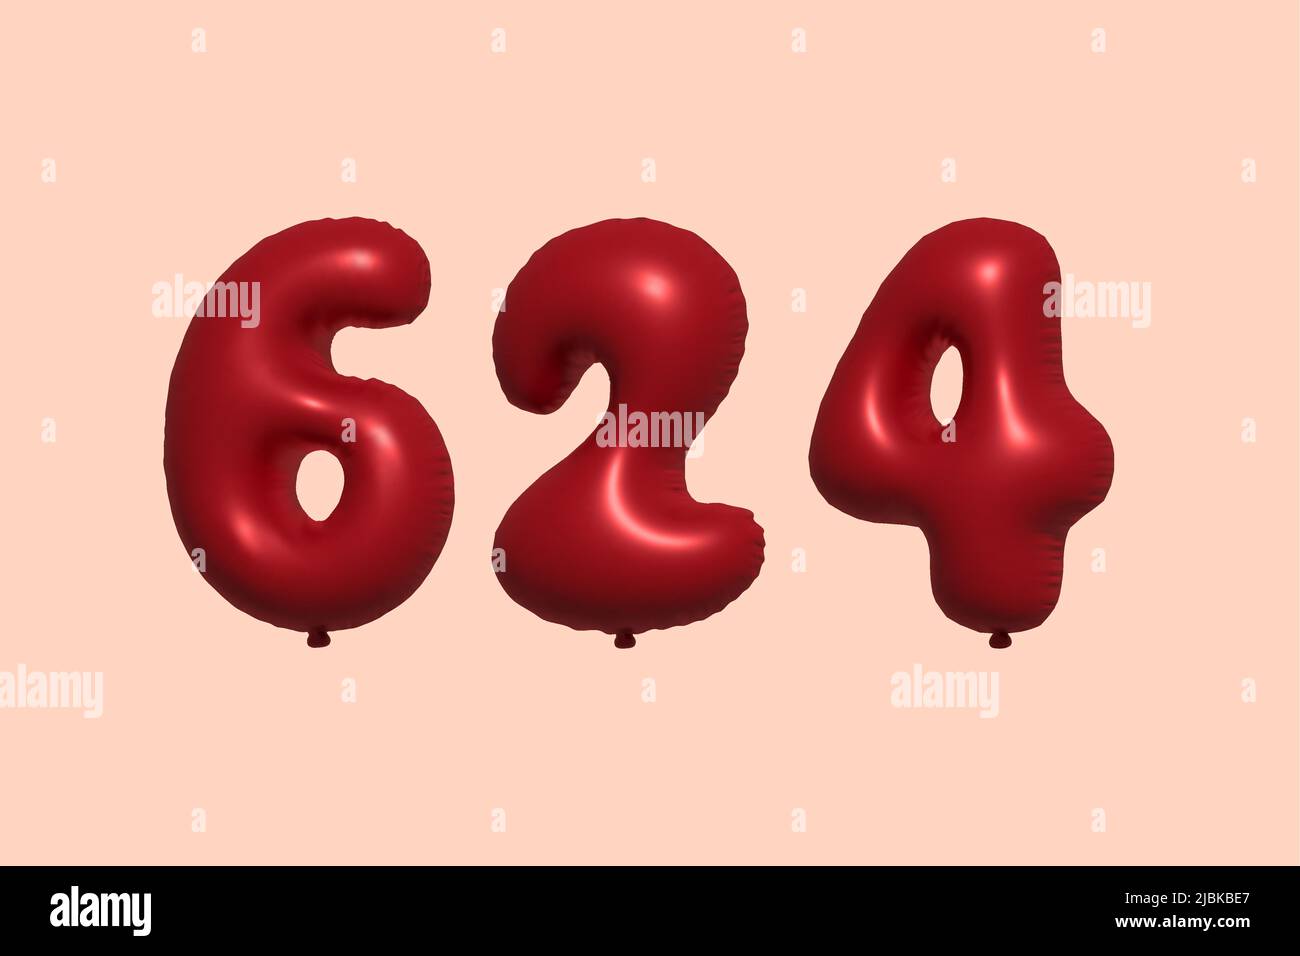 globo de 624 3d números hecho de aeroglobo metálico realista 3d renderizado. 3D globos rojos de helio para la venta decoración Fiesta Cumpleaños, Celebración de aniversario, Vacaciones de boda. Ilustración vectorial Ilustración del Vector